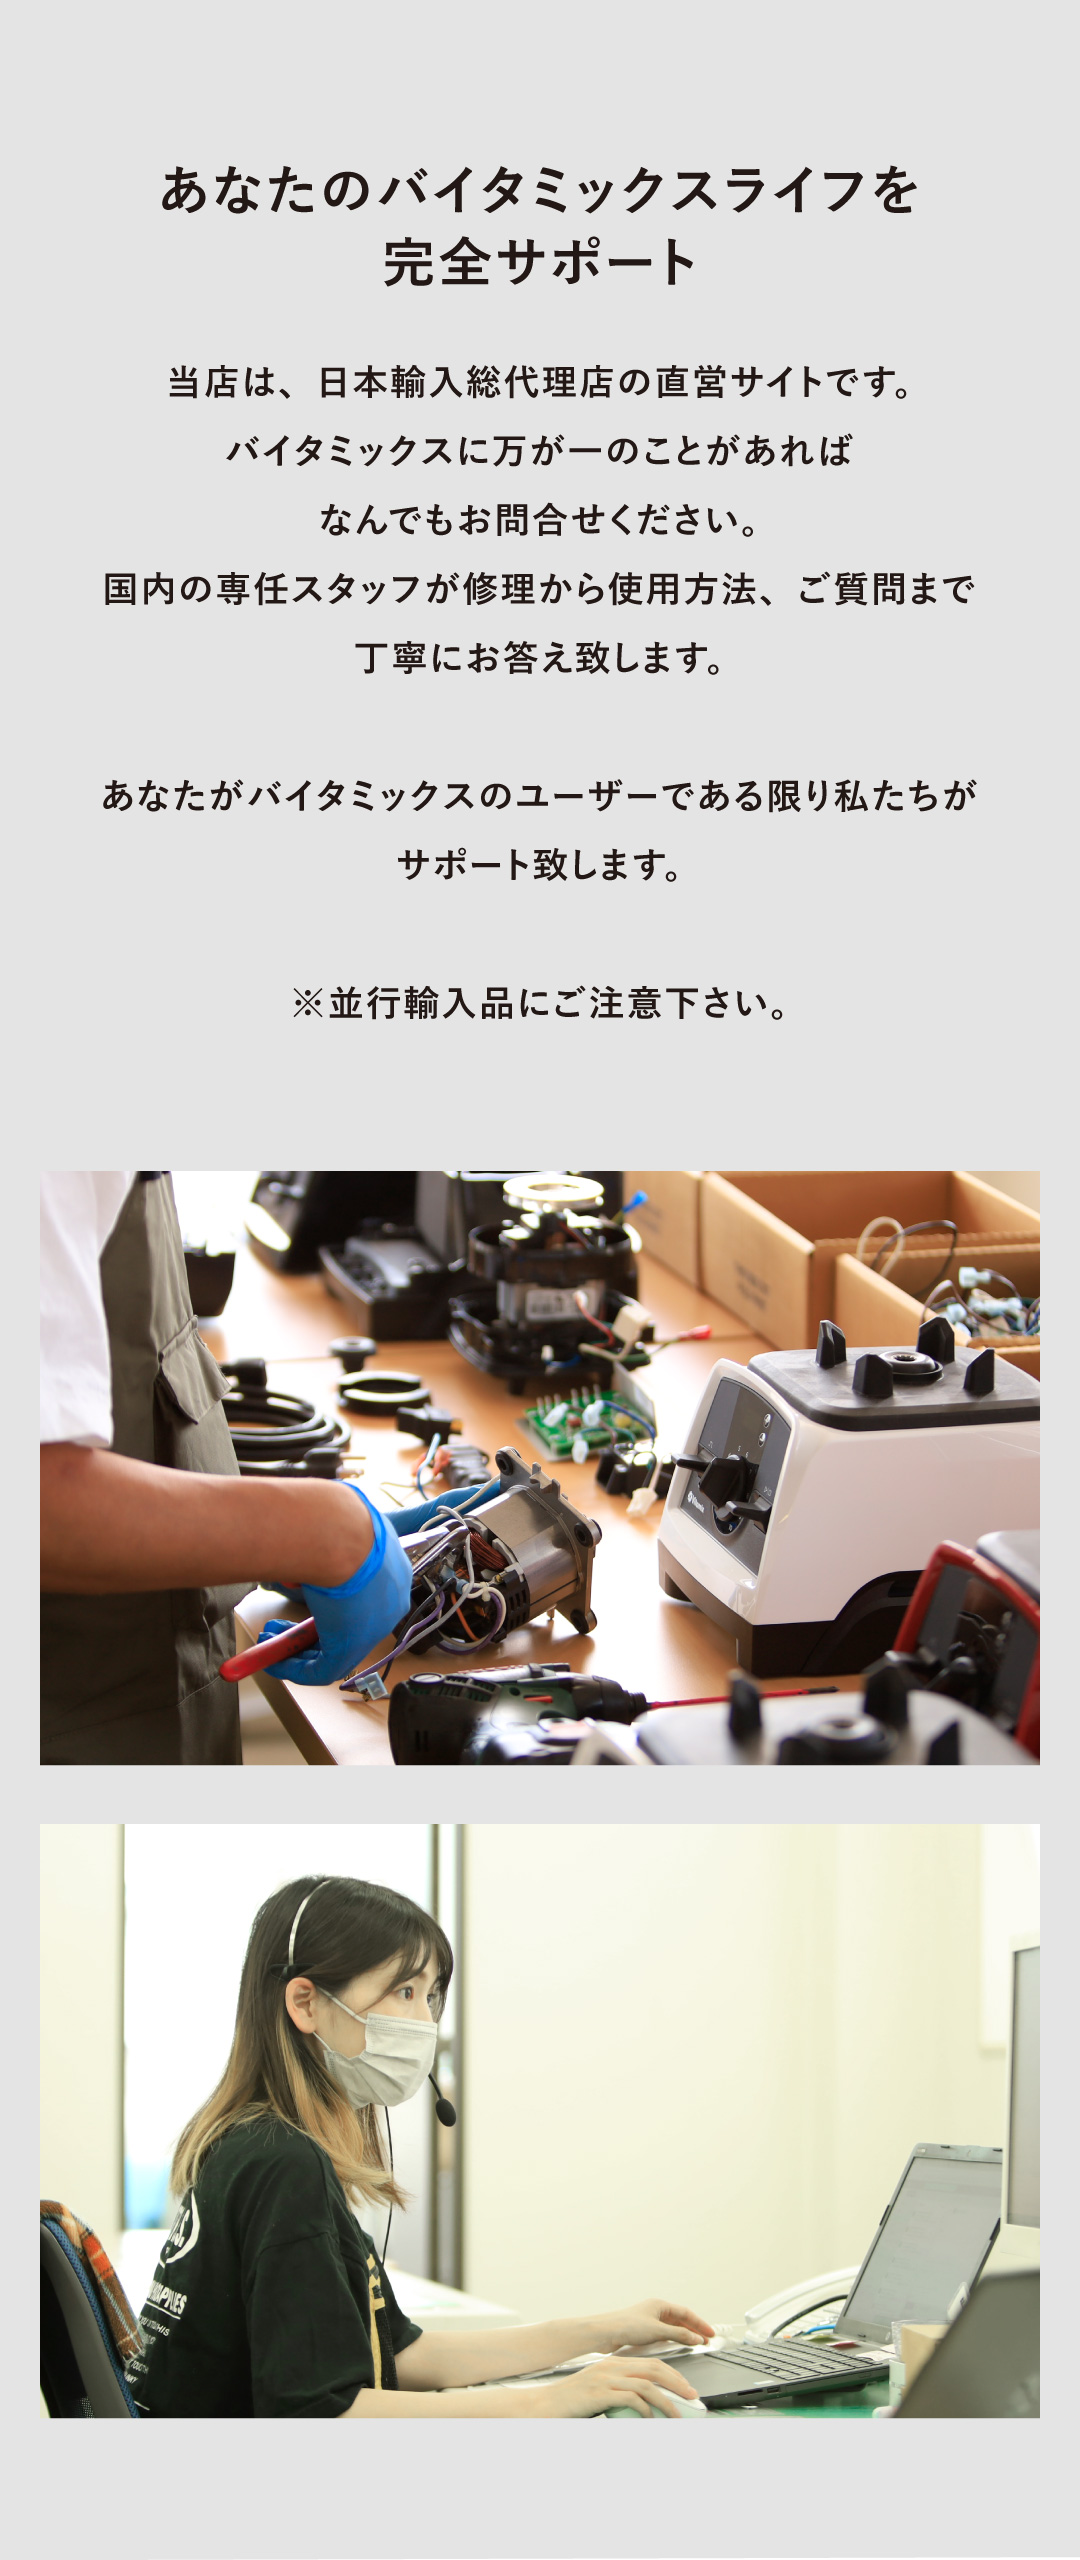 バイタミックス Vitamix バイタミックスライフ 完全サポート 日本輸入総代理店 直営サイト 専任スタッフ お問い合わせ 修理 使用方法 質問